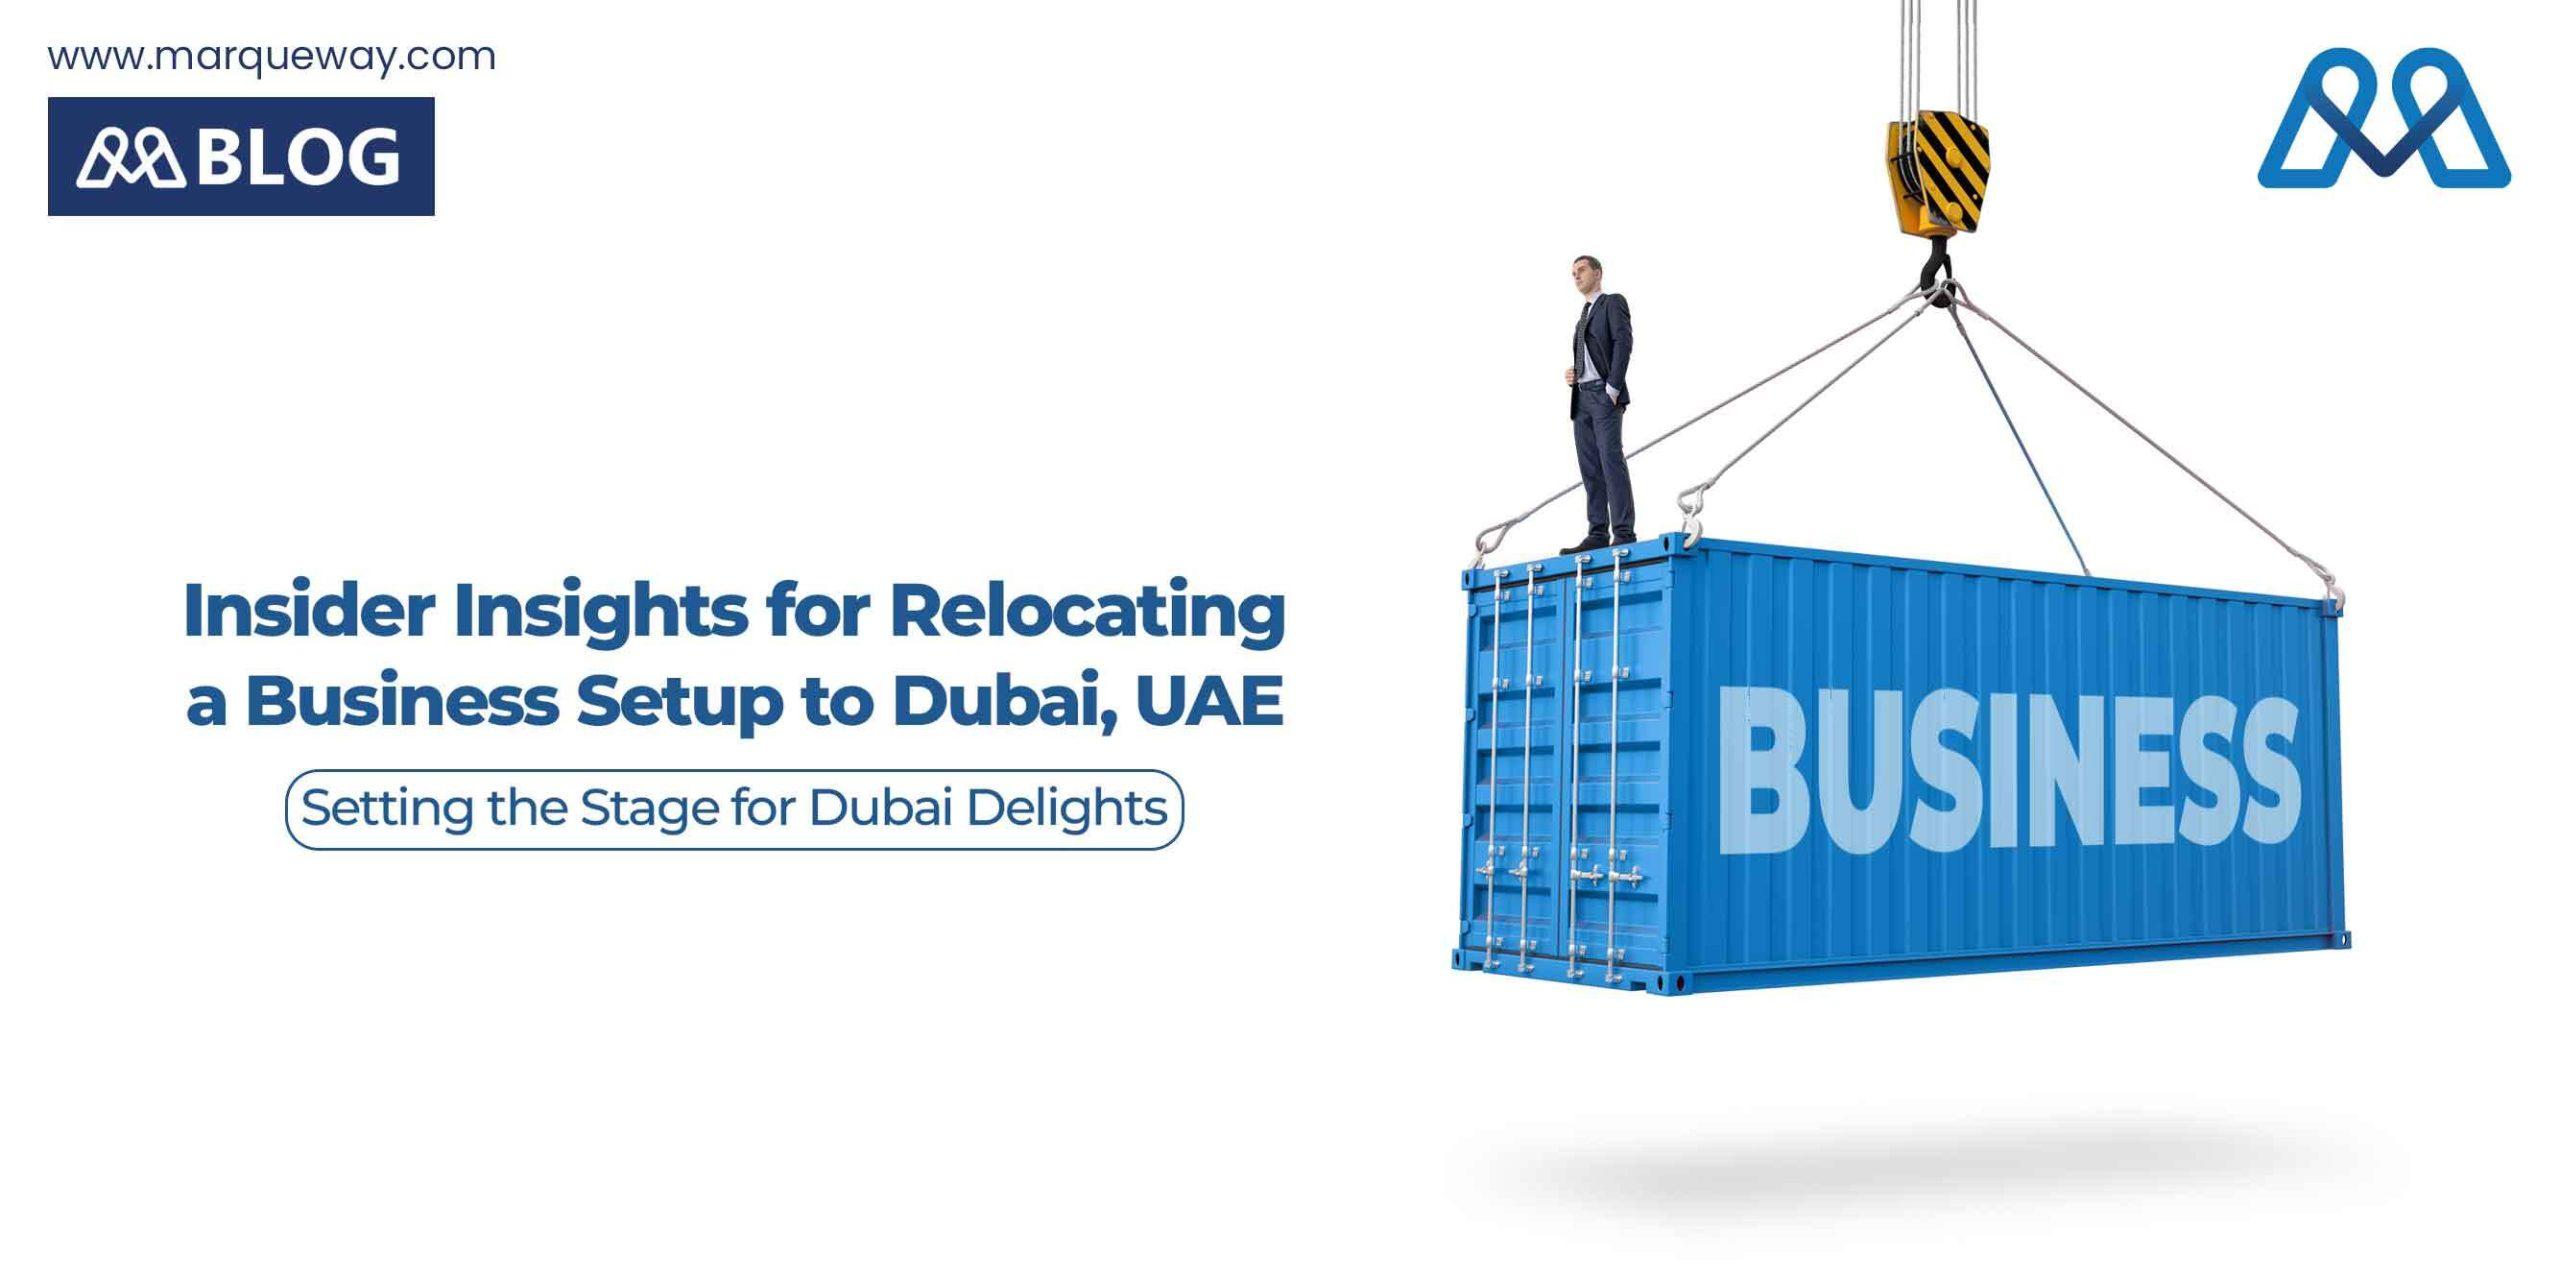 Insider Insights for Relocating a Business Setup to Dubai, UAE